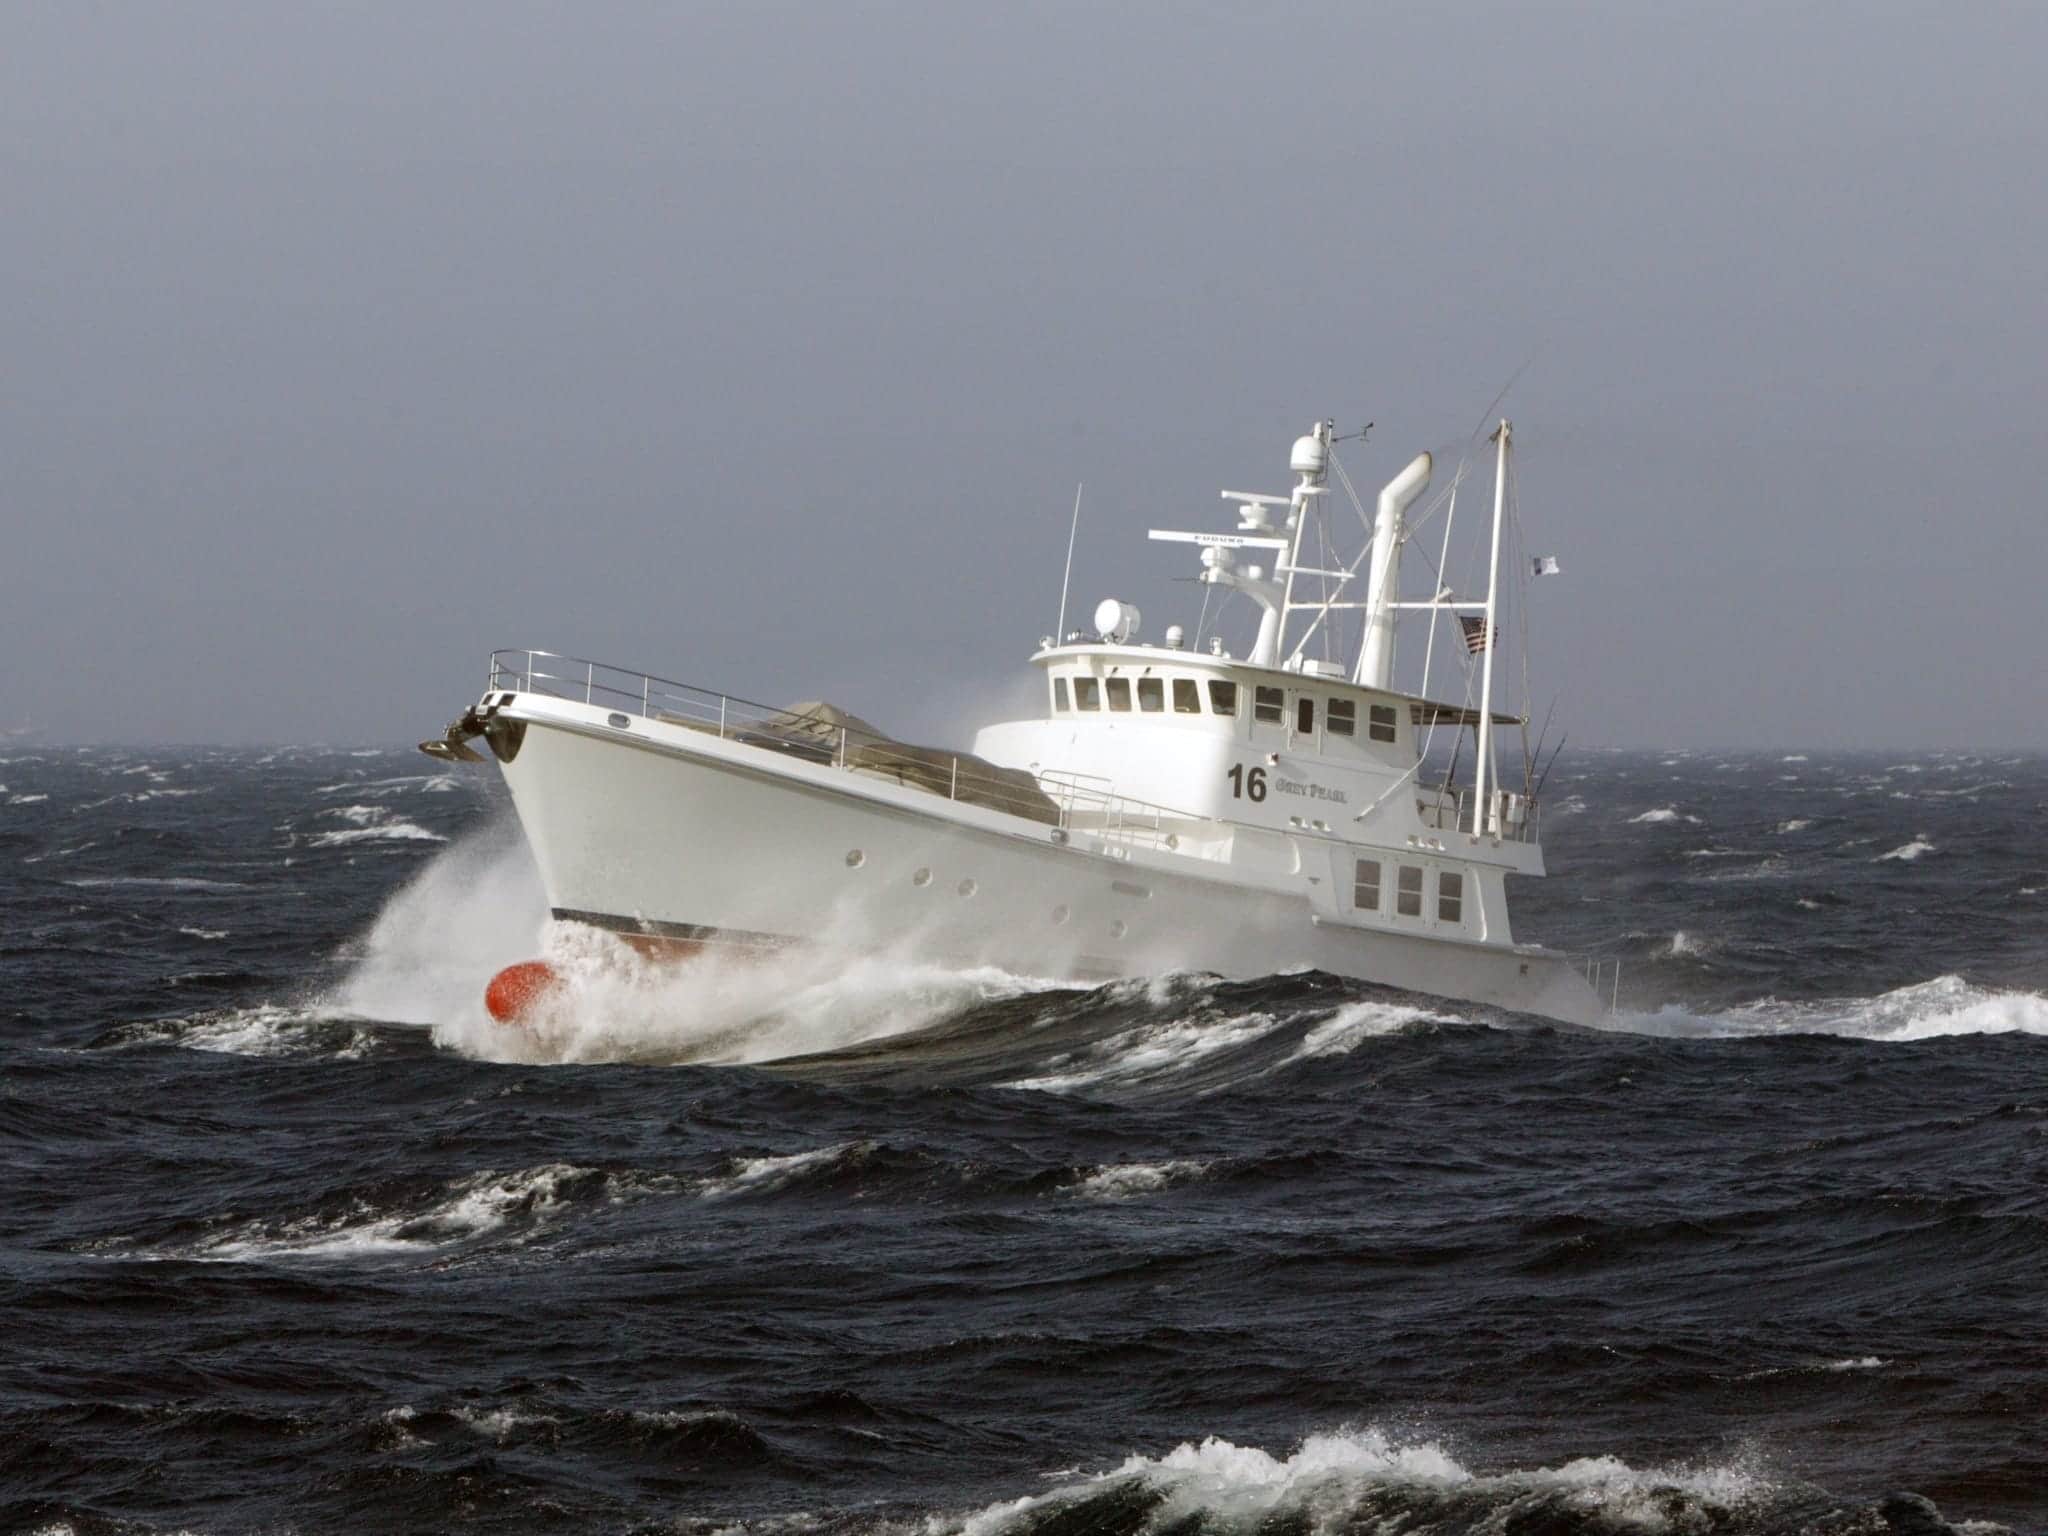 Seegängige Motorboote: Eine Nordhavn in schwerem Wetter auf dem Atlantik.